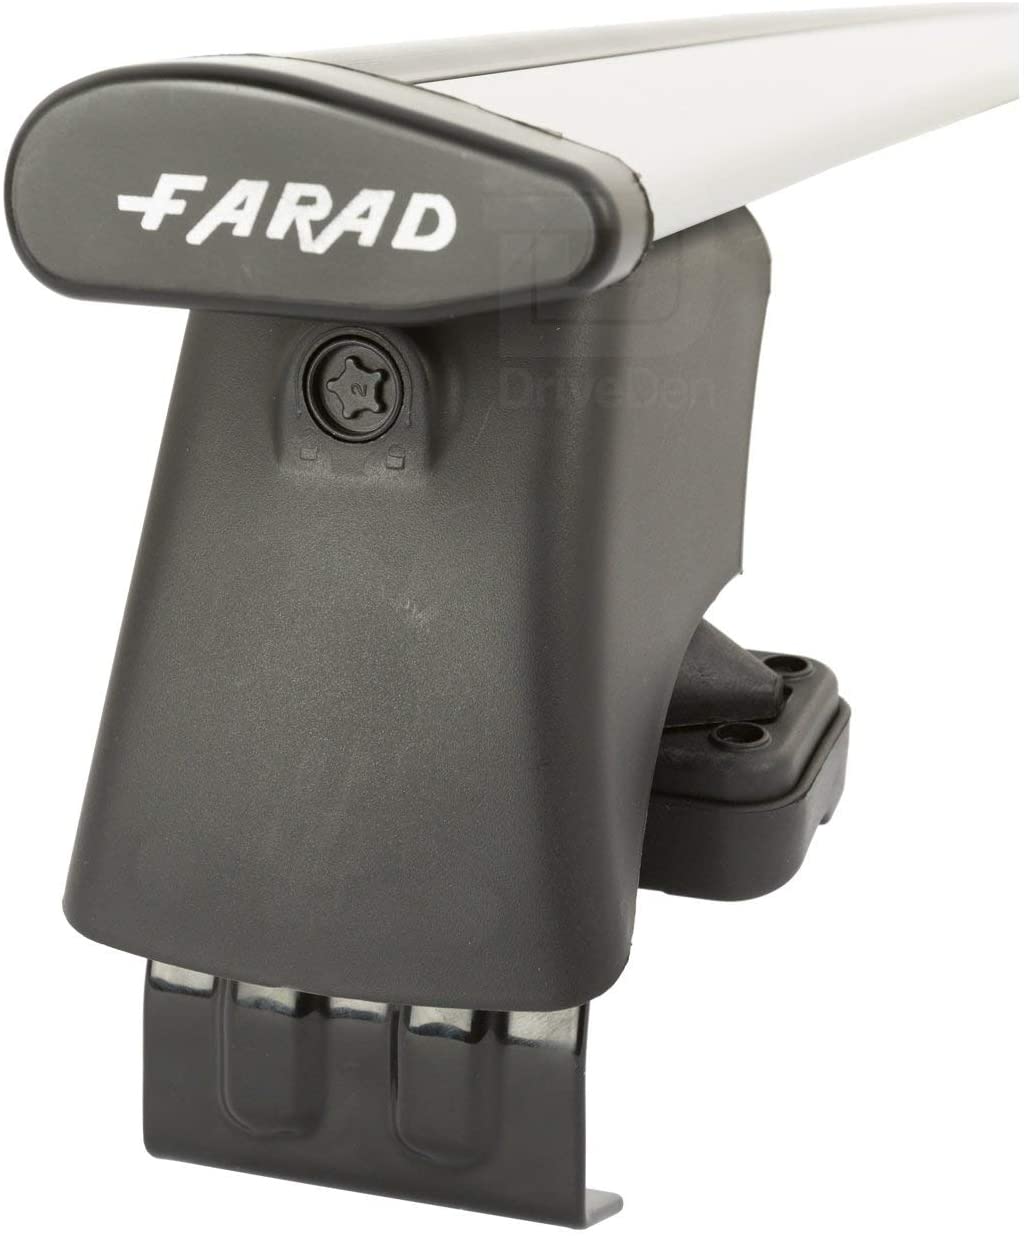 FARAD-Kit H2 per barre portatutto - Ford Fusion 2002-2012 (senza corrimano)